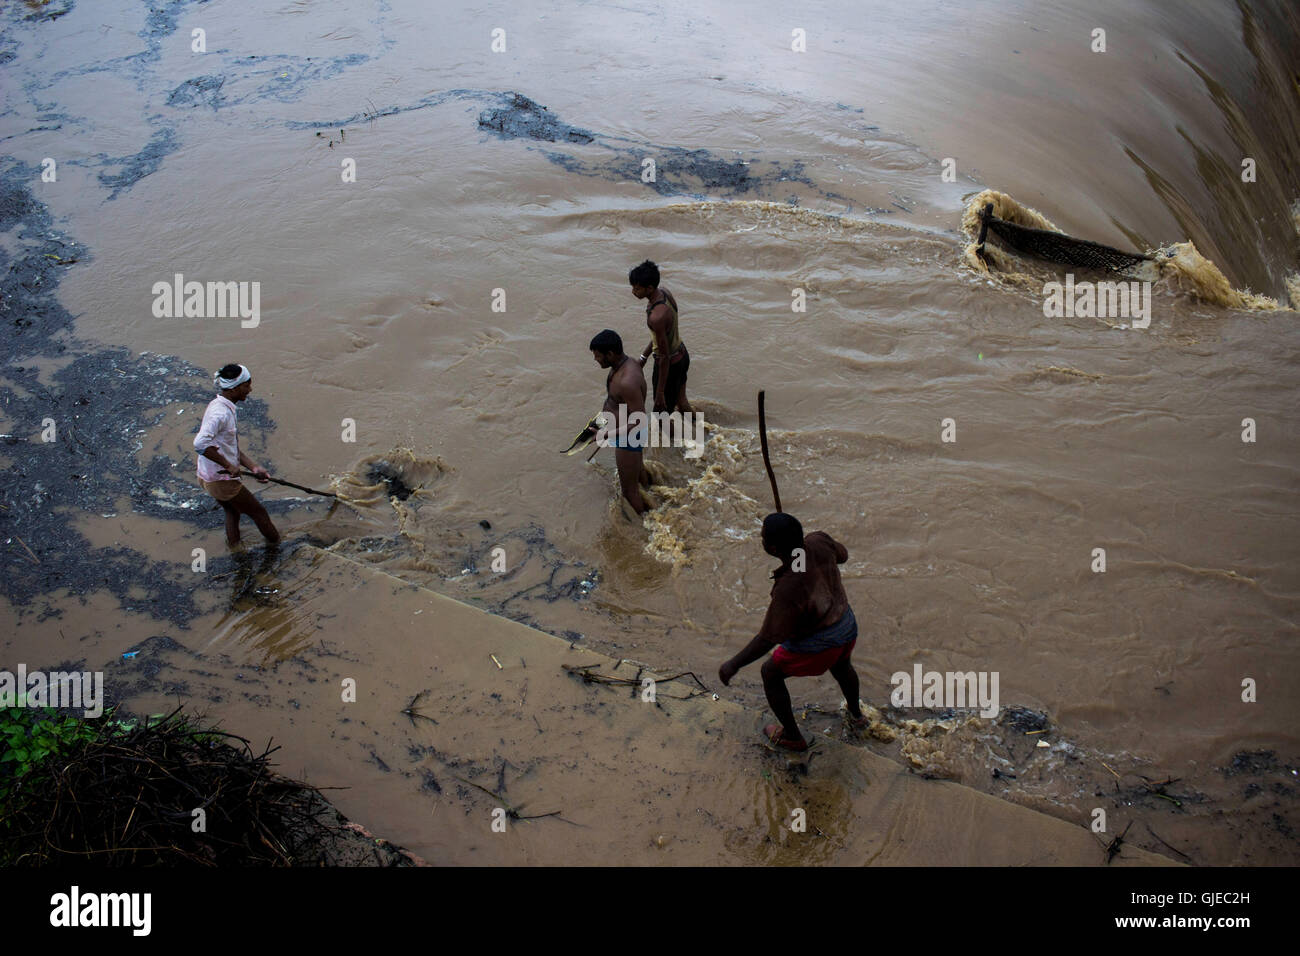 Menschen sammeln Brennholz aus wasserüberfluteten Fluss. Während Indien  feiert 70. Independence Day mit actionreichen Geist, Prime Minister  Narendra Modi Adressierung über mehrere Fragen, gibt es ein Teil des  Landes, die Politik und